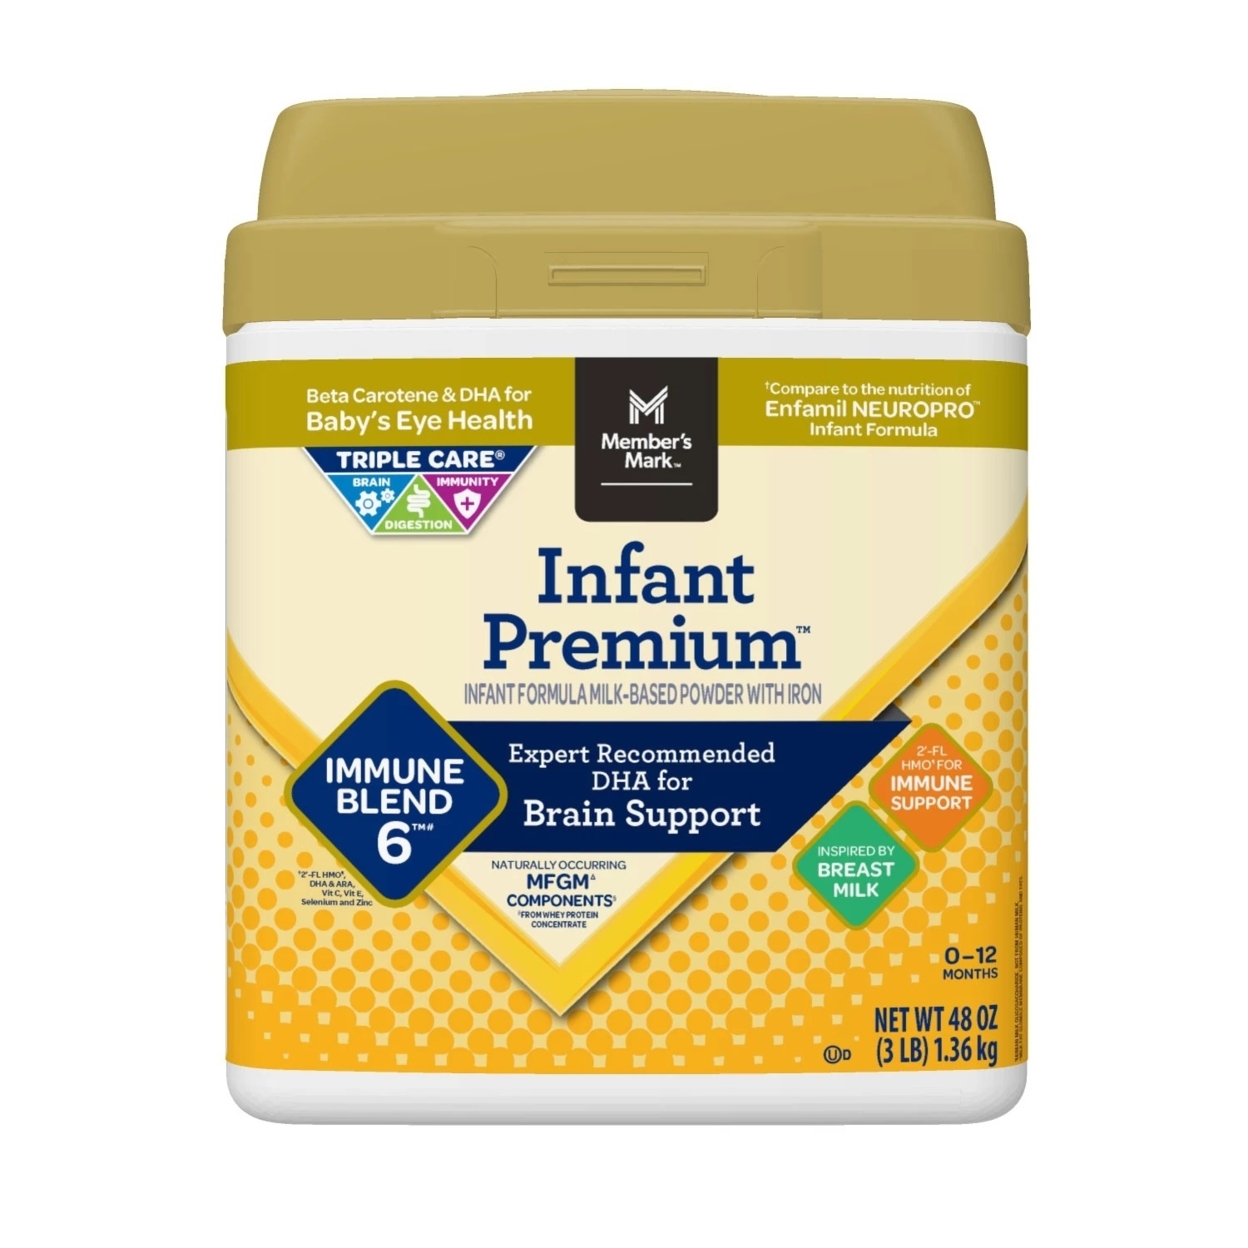 Member's Mark Infant Premium Milk-Based Formula Powder, Immune Blend (48 Ounce)